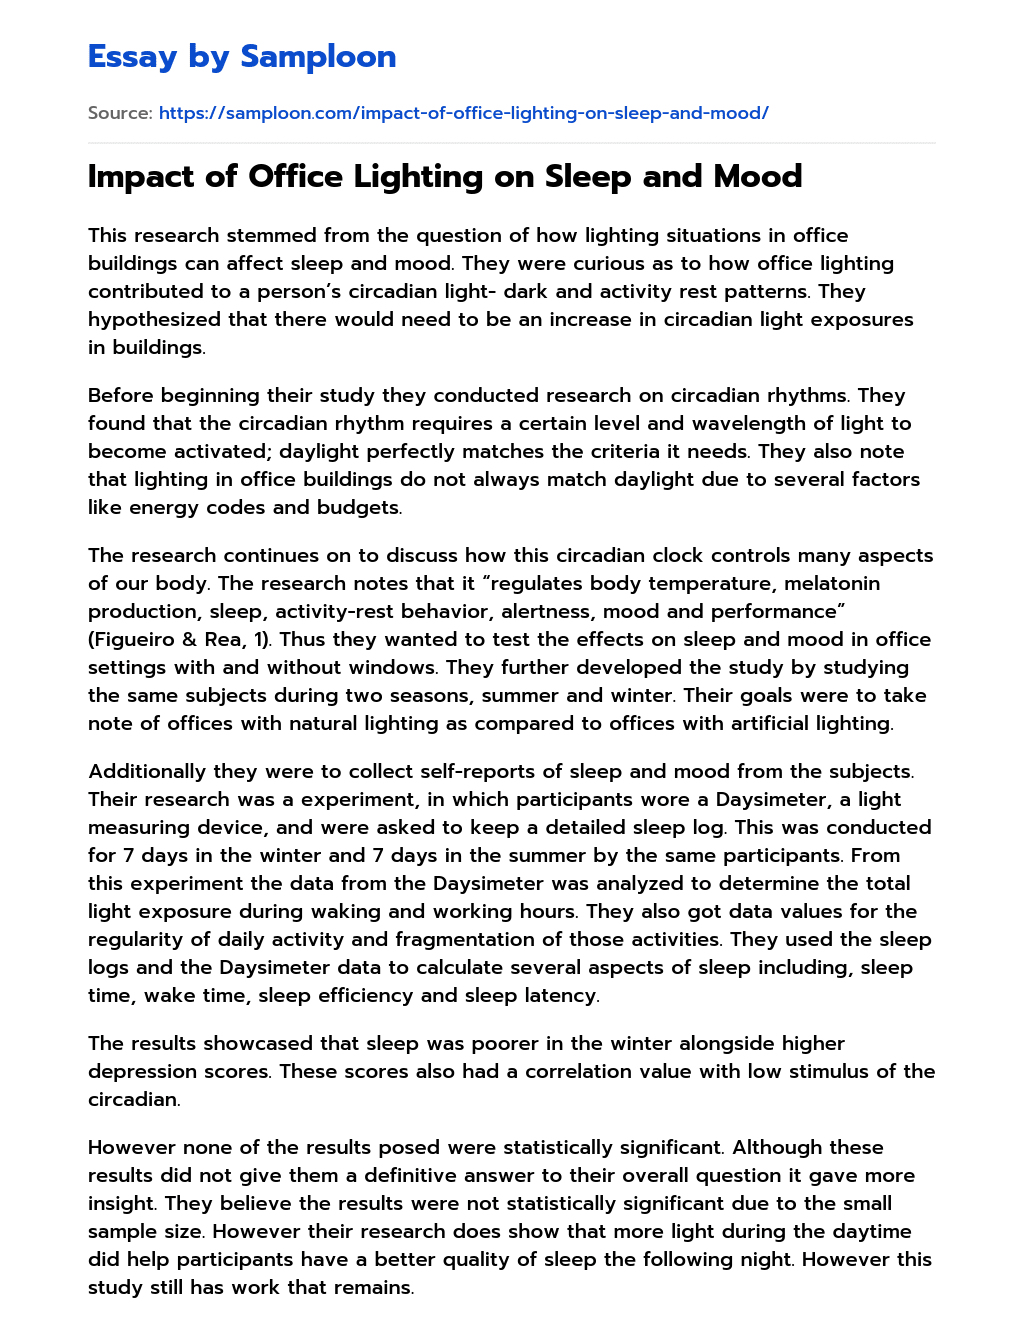 Impact of Office Lighting on Sleep and Mood essay